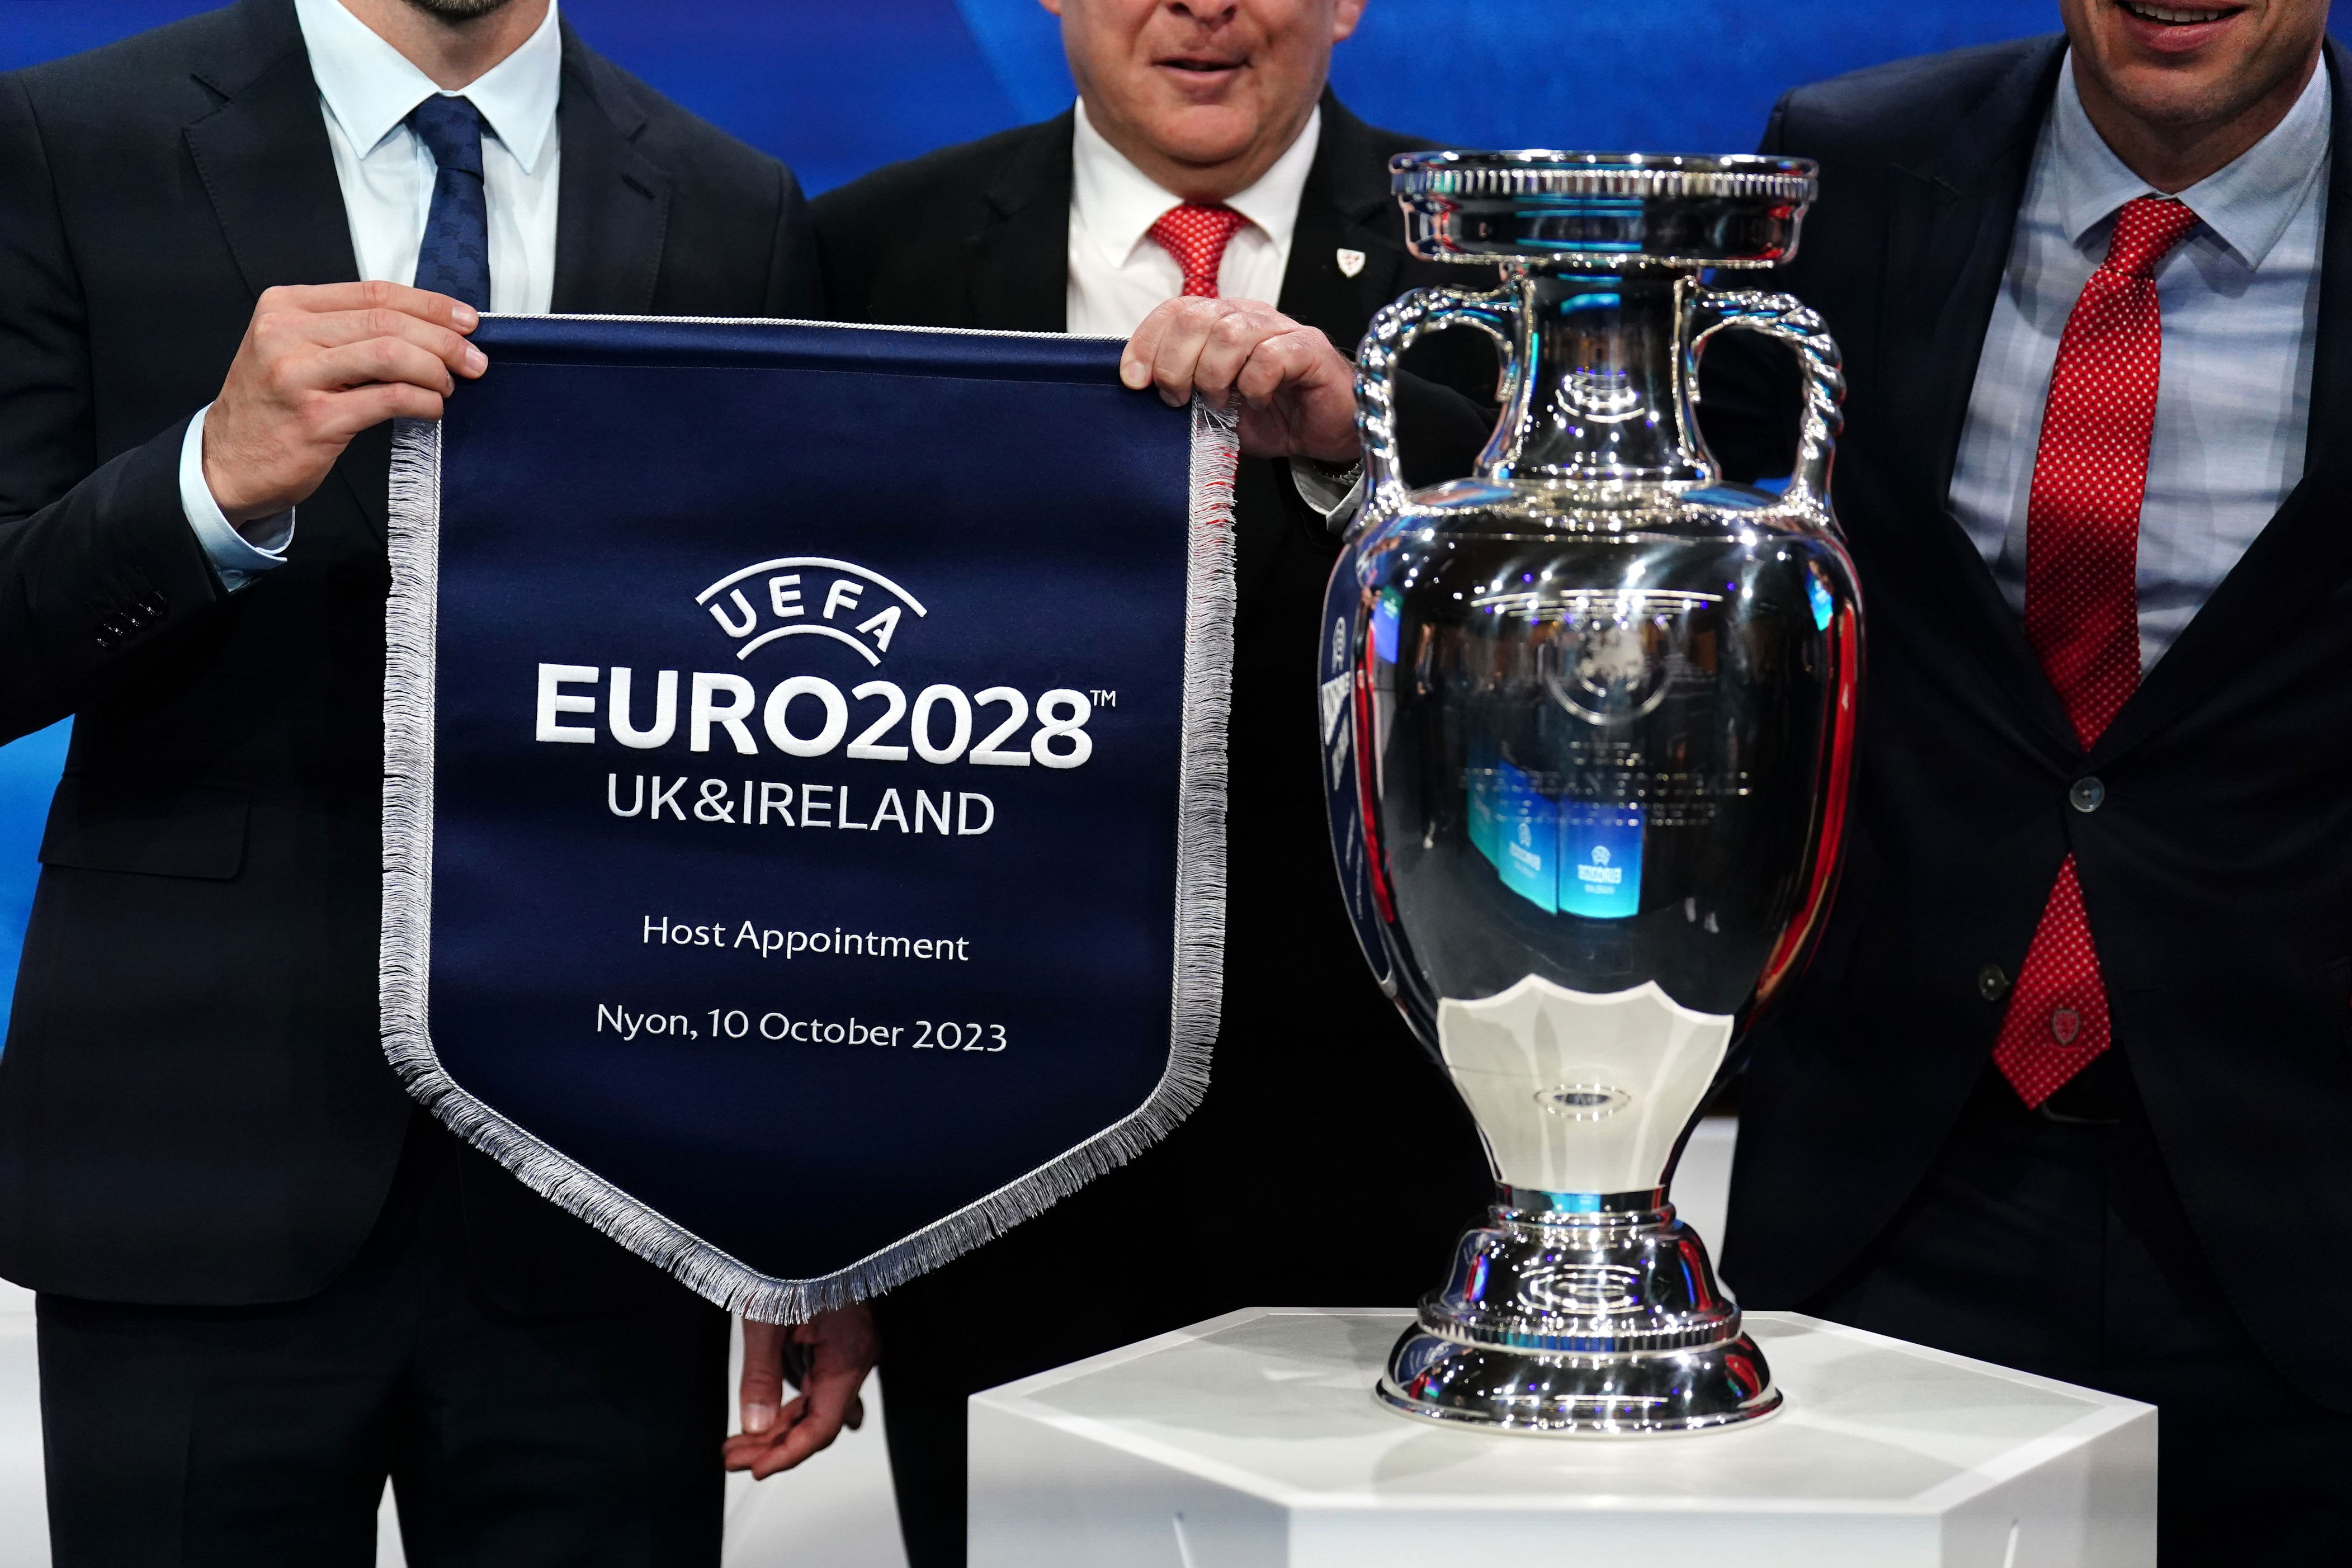 La Uefa Anunció Oficialmente Cuáles Serán Las Sedes De La Eurocopa 2028